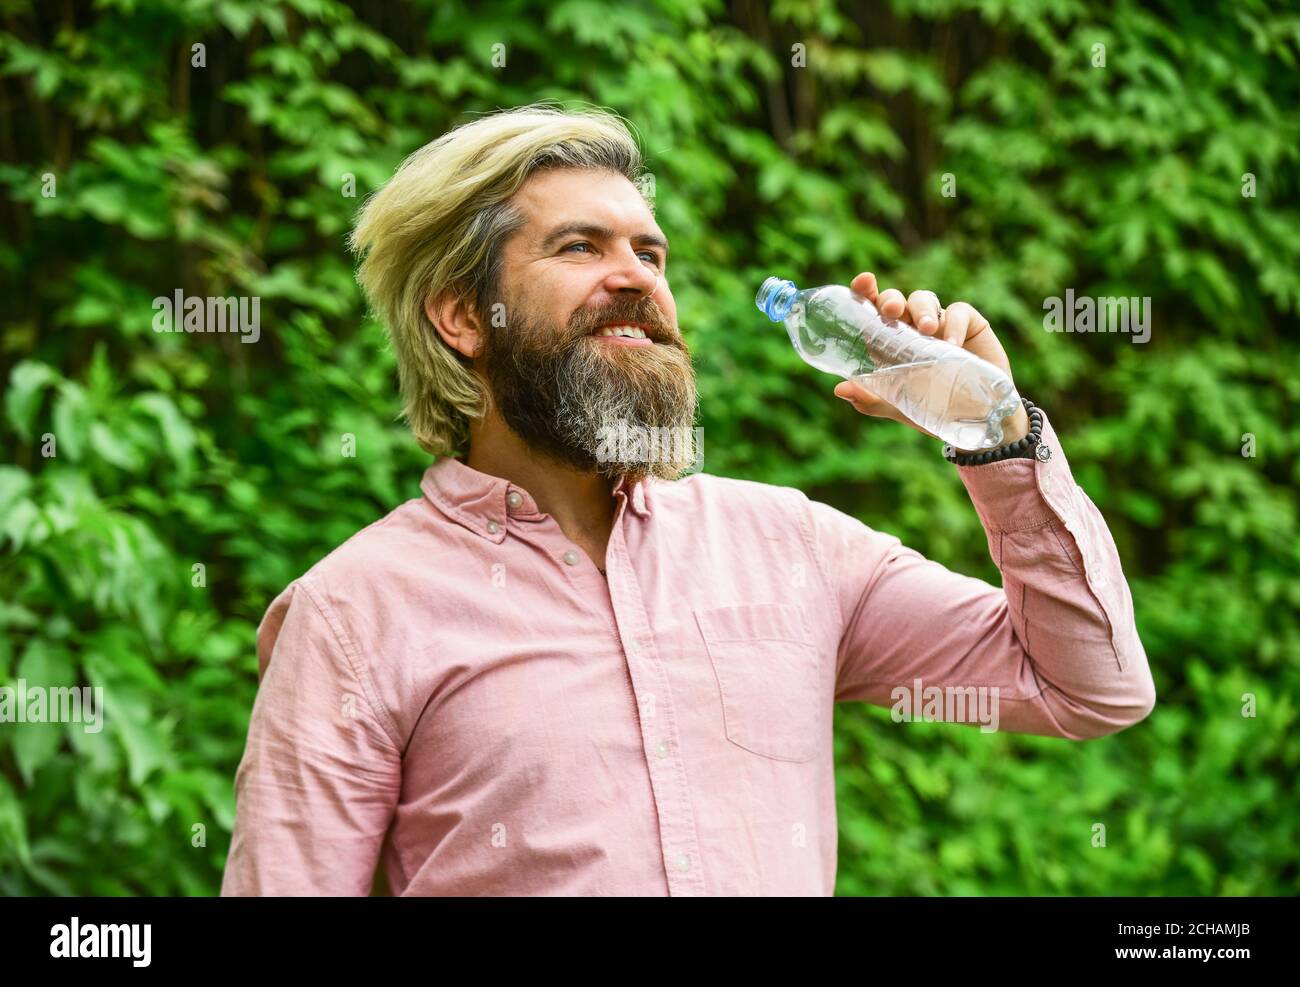 il suffit de sourire. un barbu tient une bouteille d'eau en plastique. il a soif. buvez un peu d'eau pendant que vous marchez dans le parc. rafraîchissez-vous. Maintenir l'équilibre de l'eau dans le corps. Brutaux hipster mâle boire de l'eau. Banque D'Images